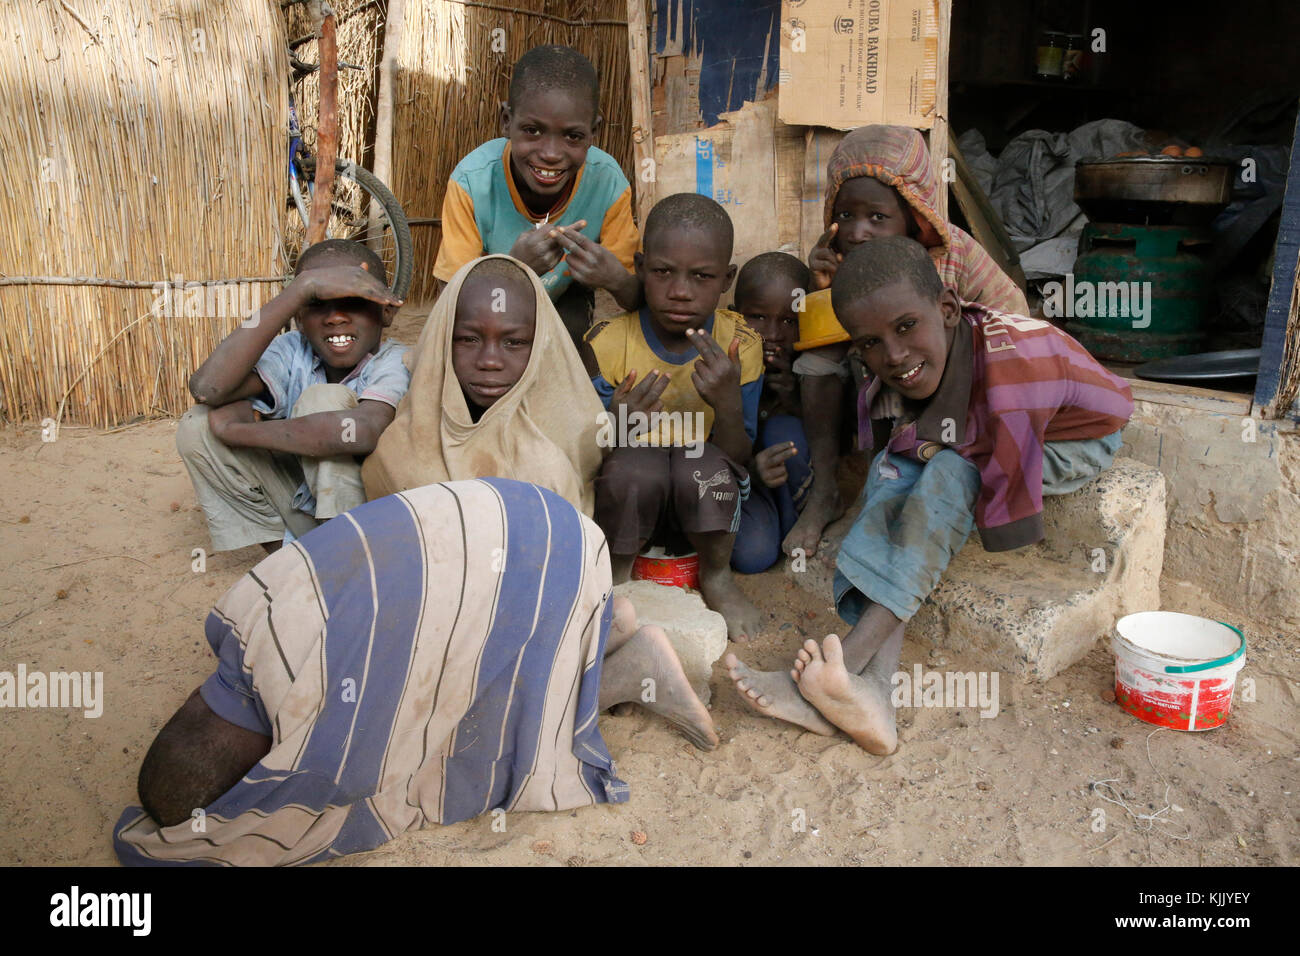 Talibes en Saint Louis (niños que viven y estudian en las escuelas islámicas y mendigar en las calles). Senegal. Foto de stock